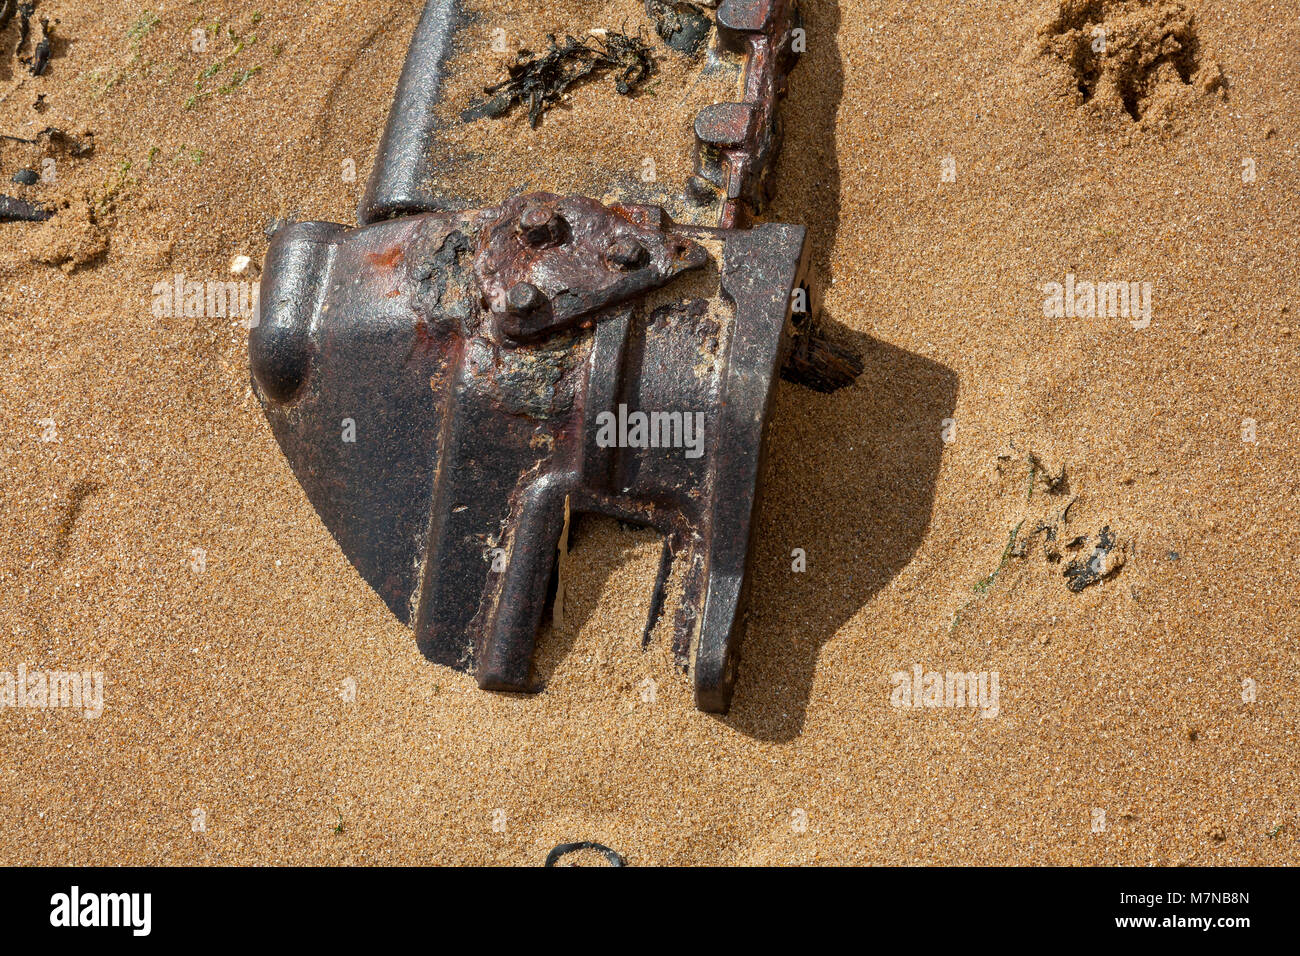 Un grand objet métallique de la rouille sur la plage, à moitié enfoui dans le sable, Broadstairs, Kent, UK Banque D'Images